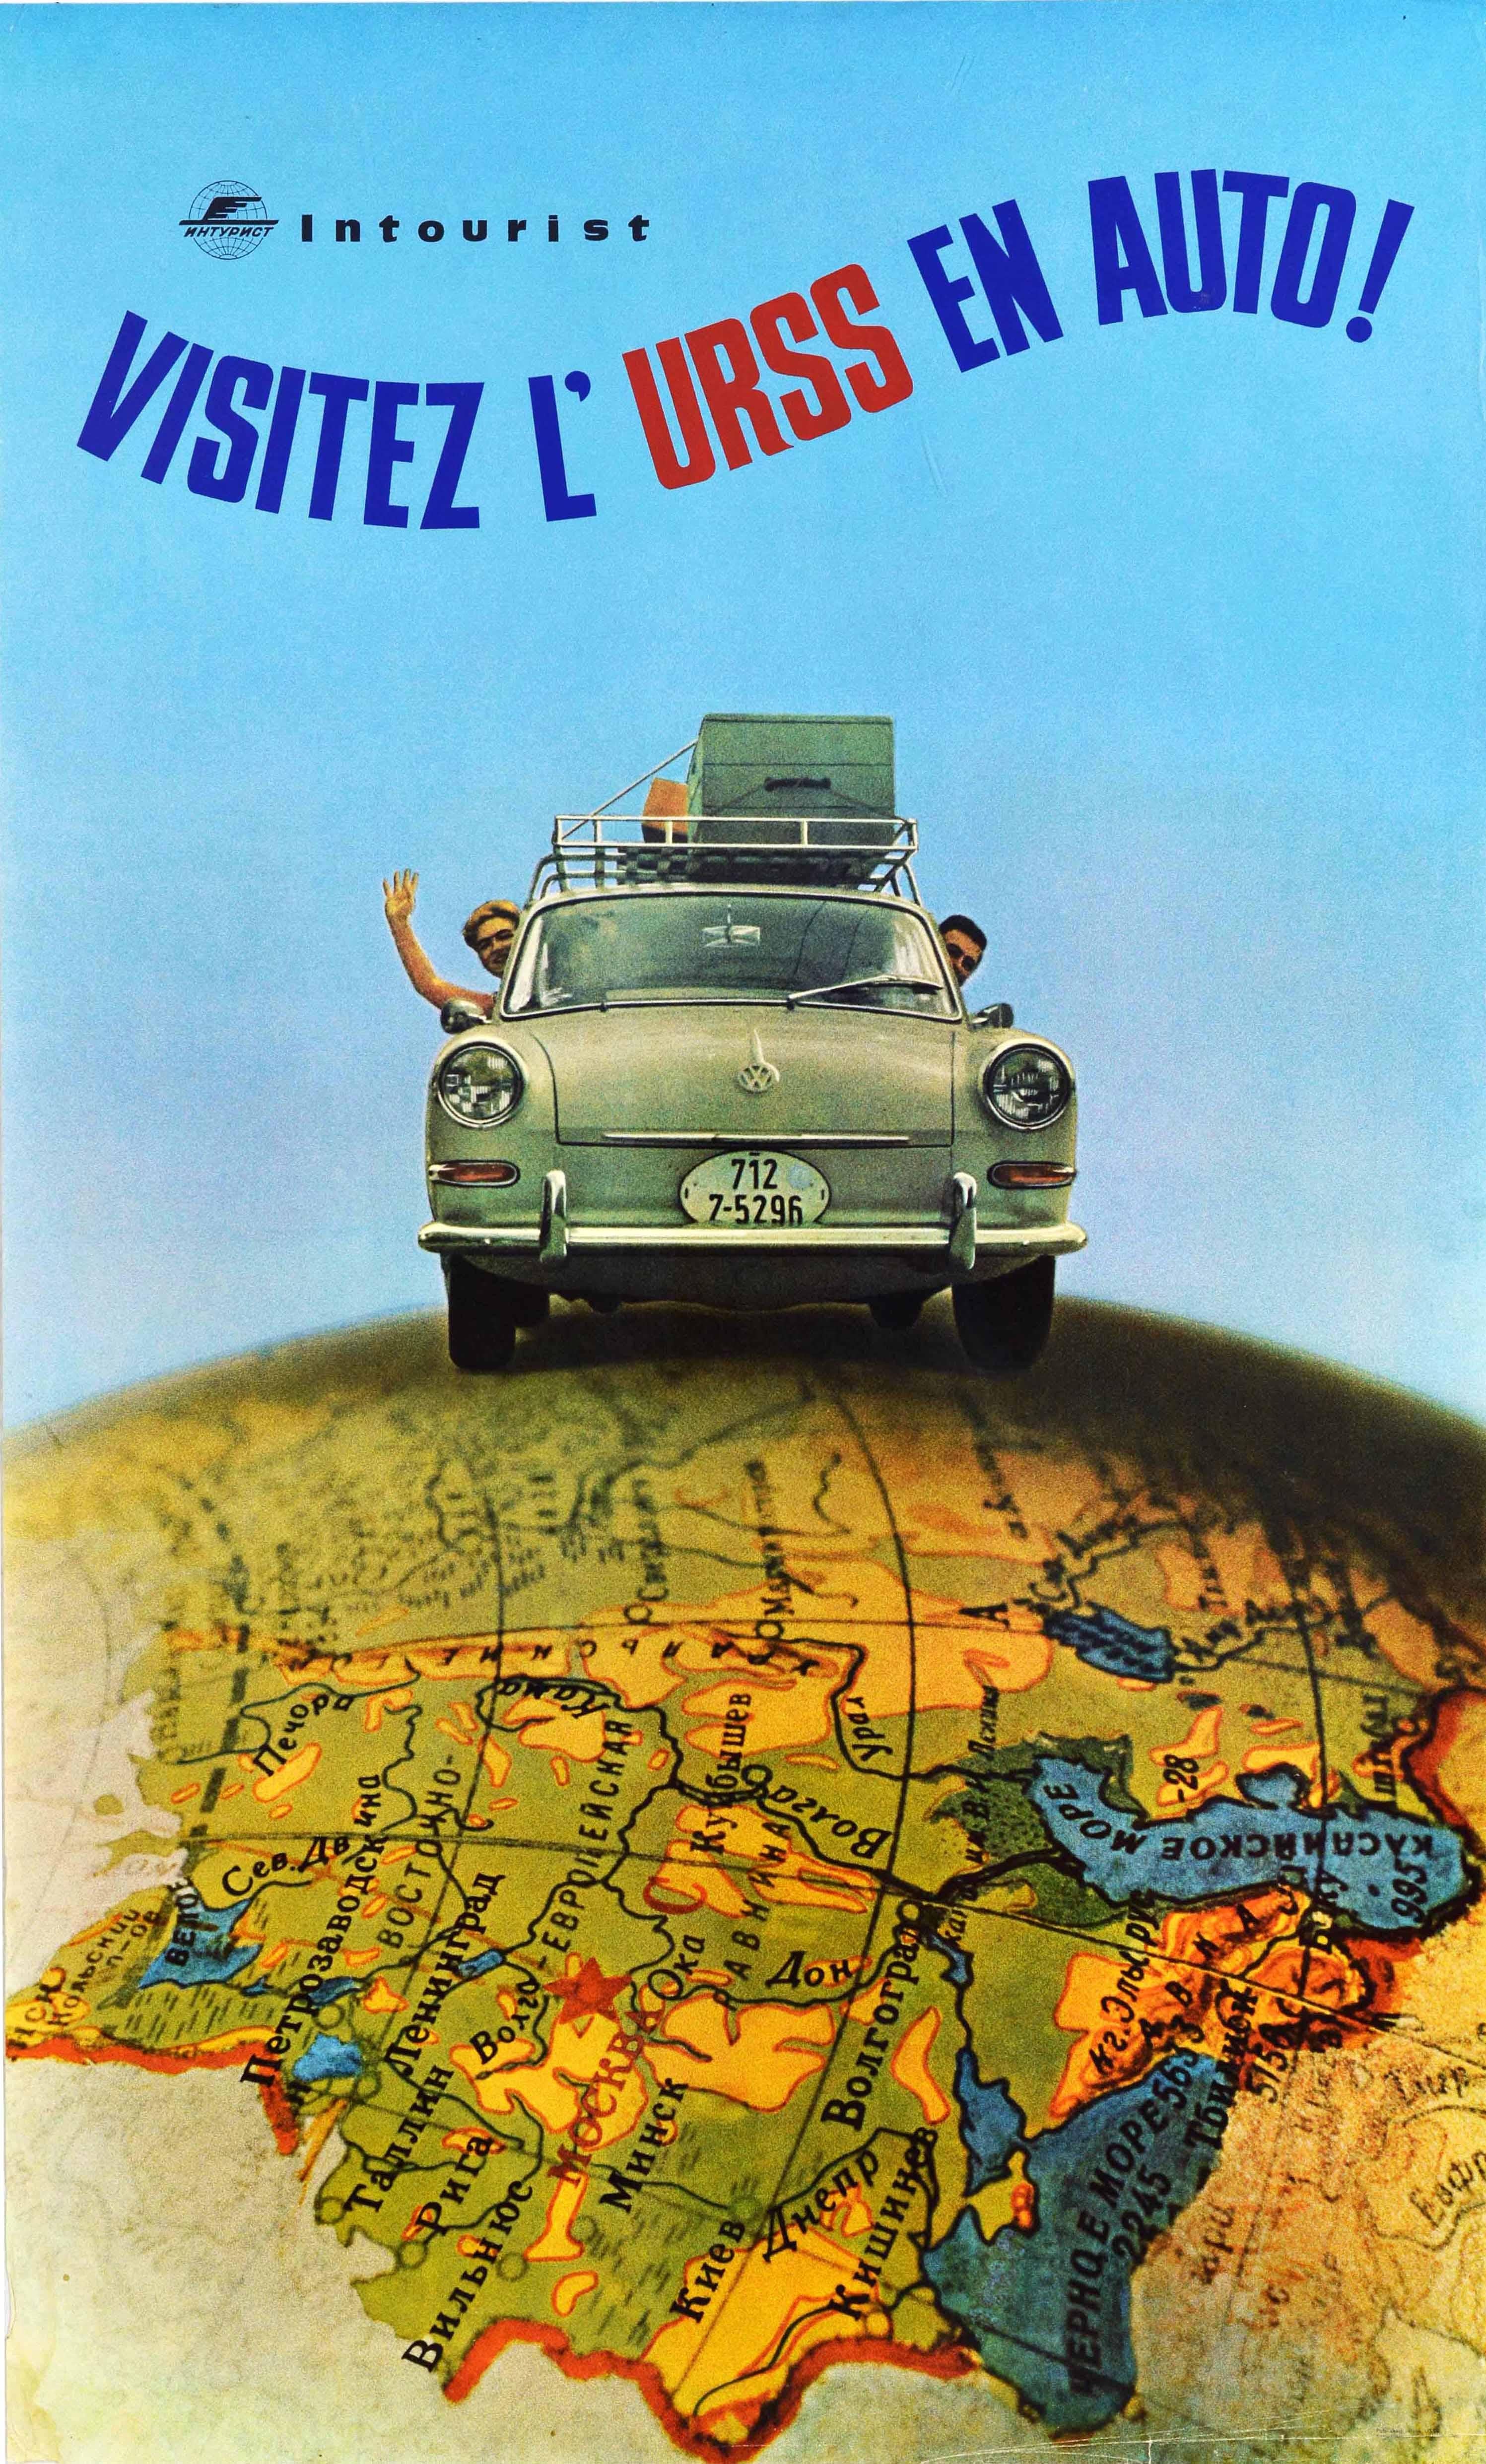 Unknown Print - Original Vintage Soviet Travel Poster Visitez L'URSS En Auto VW Intourist USSR